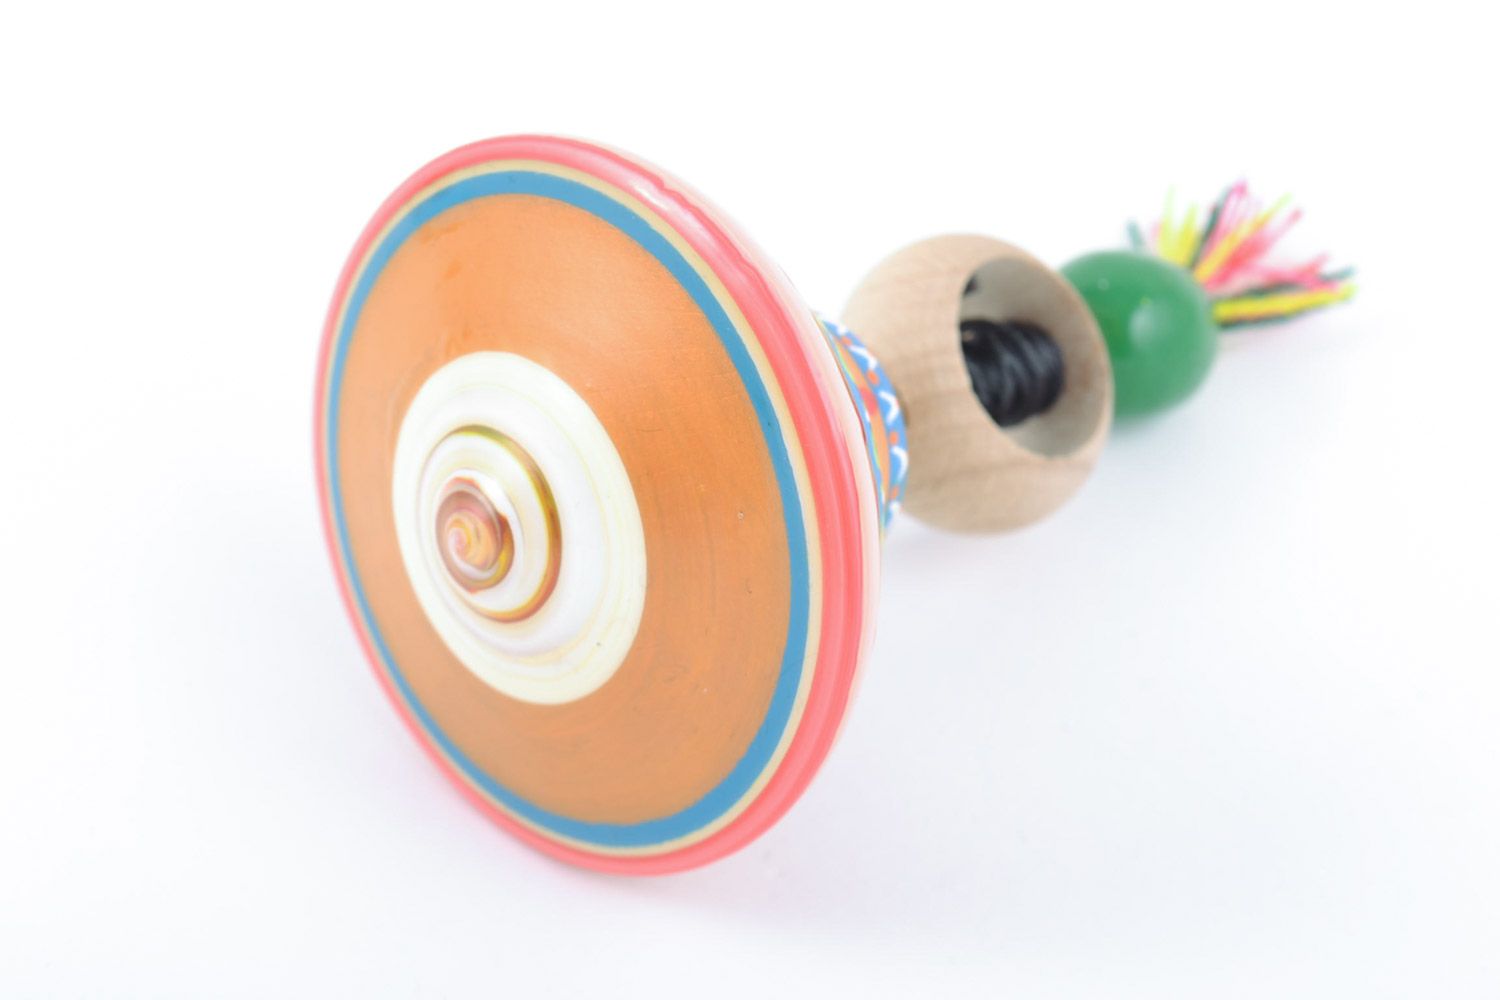 Красивый деревянный волчок ручной работы игрушка для детей расписанный красками фото 3